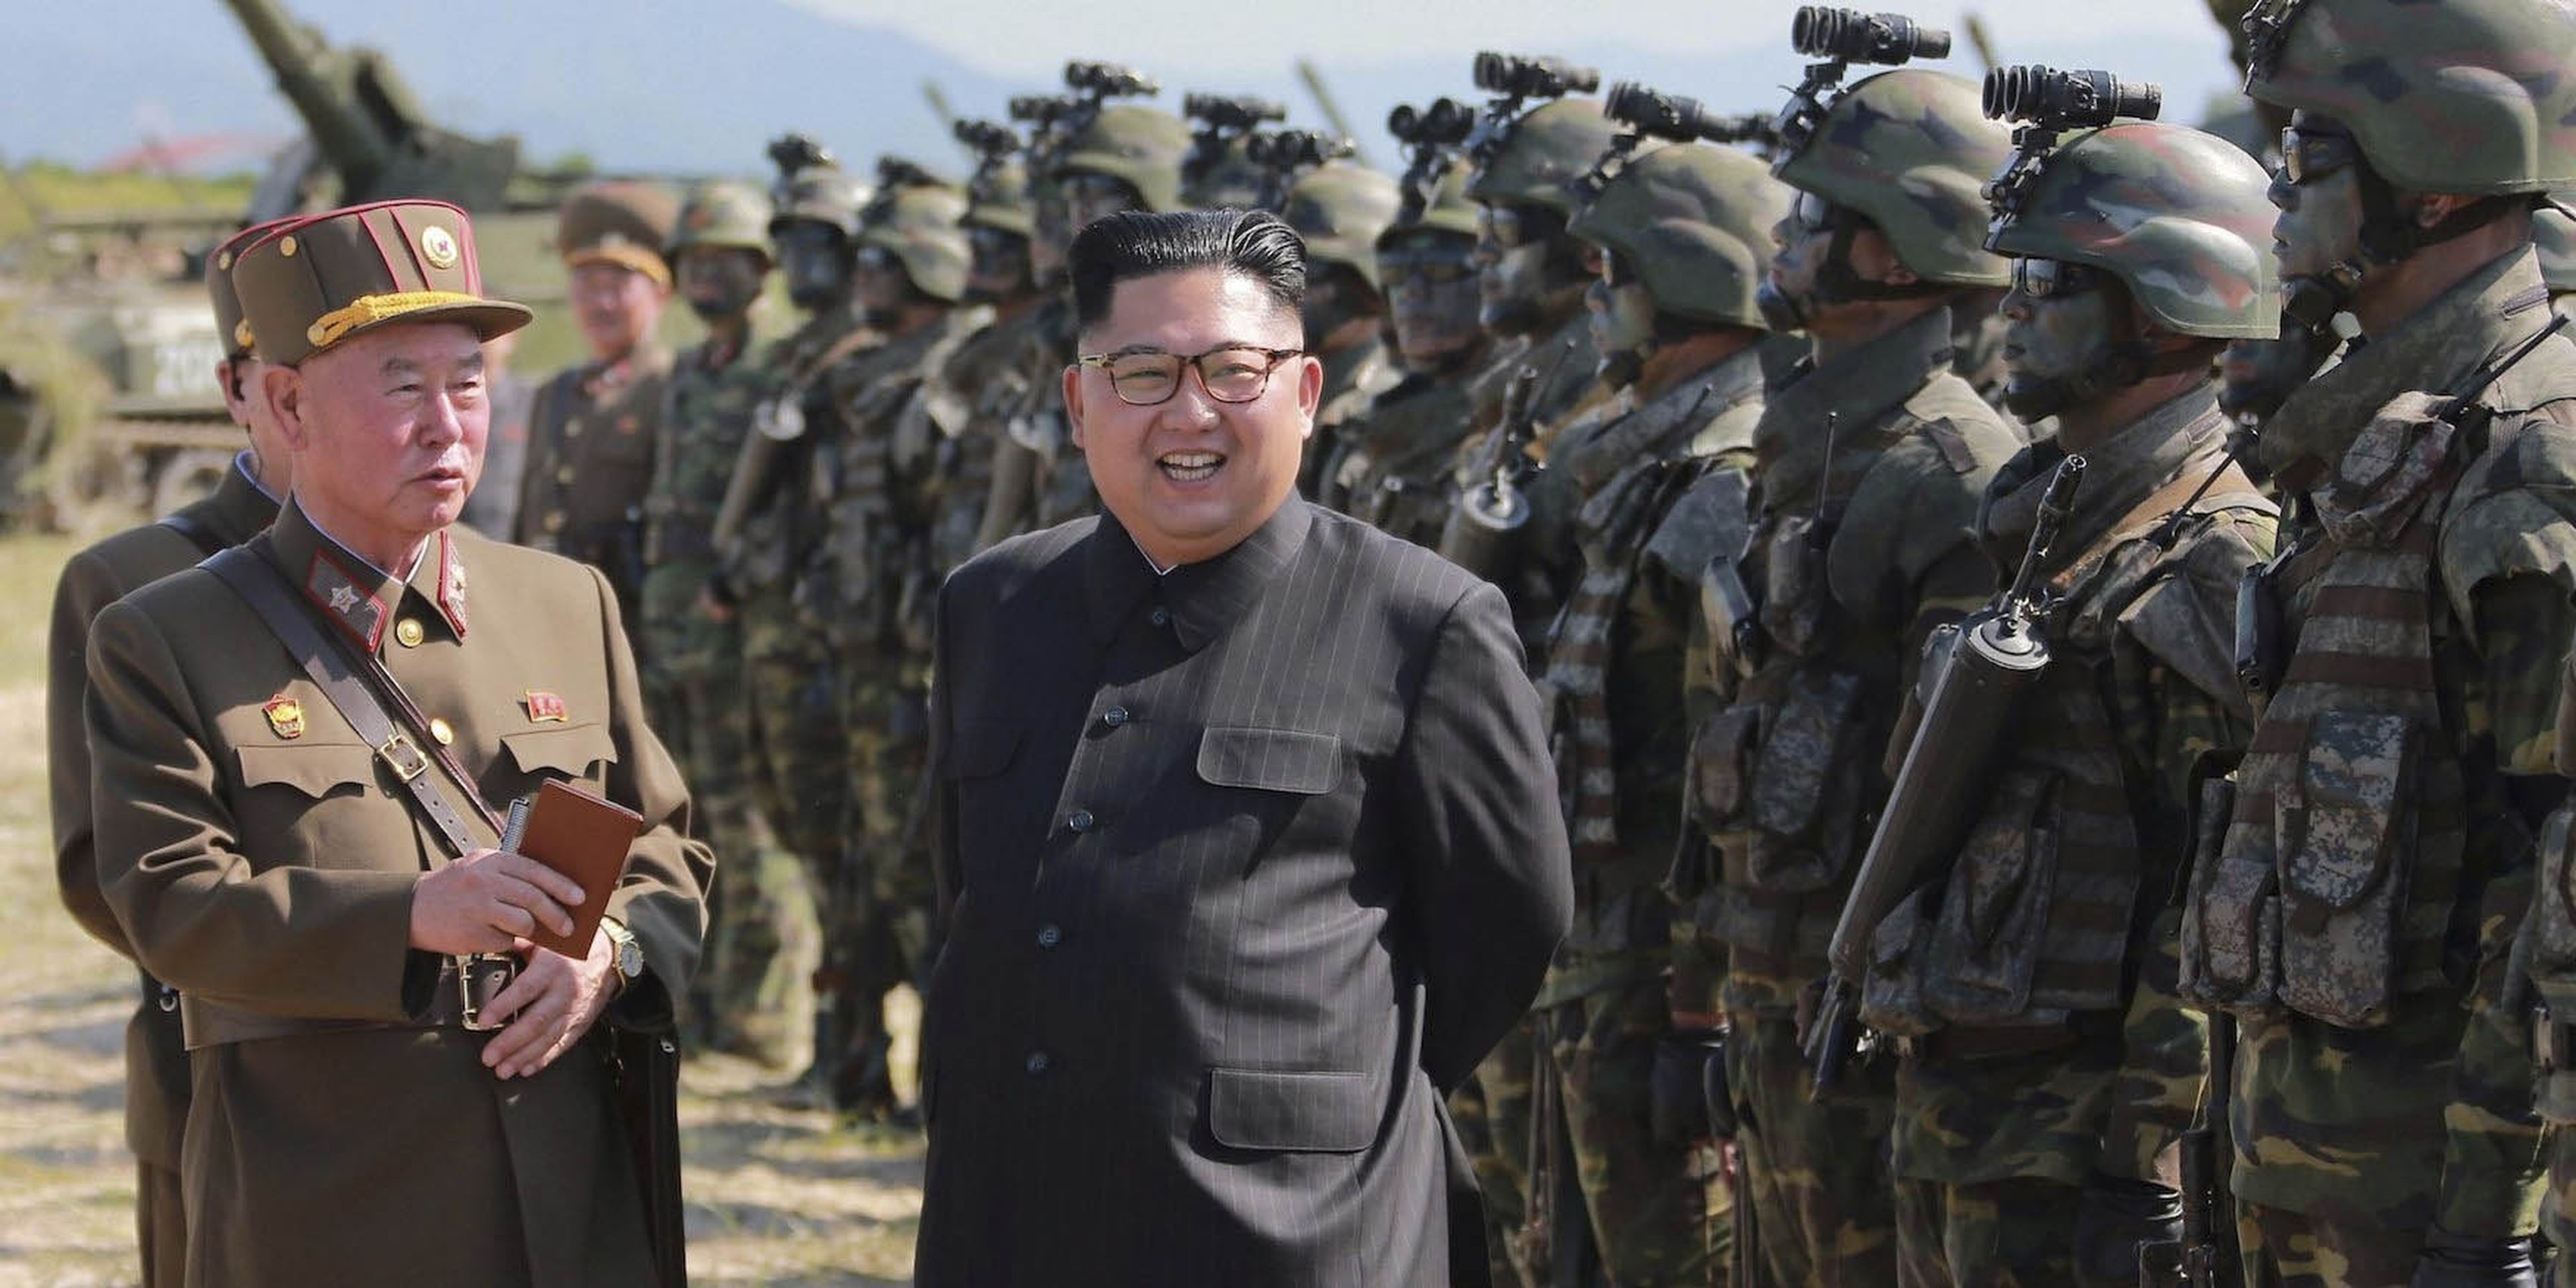 El líder de Corea del Norte Kim Jong pasa revista a las tropas en una fotografía sin datar facilitada por la agencia oficial del país KCNA en agosto de 2017